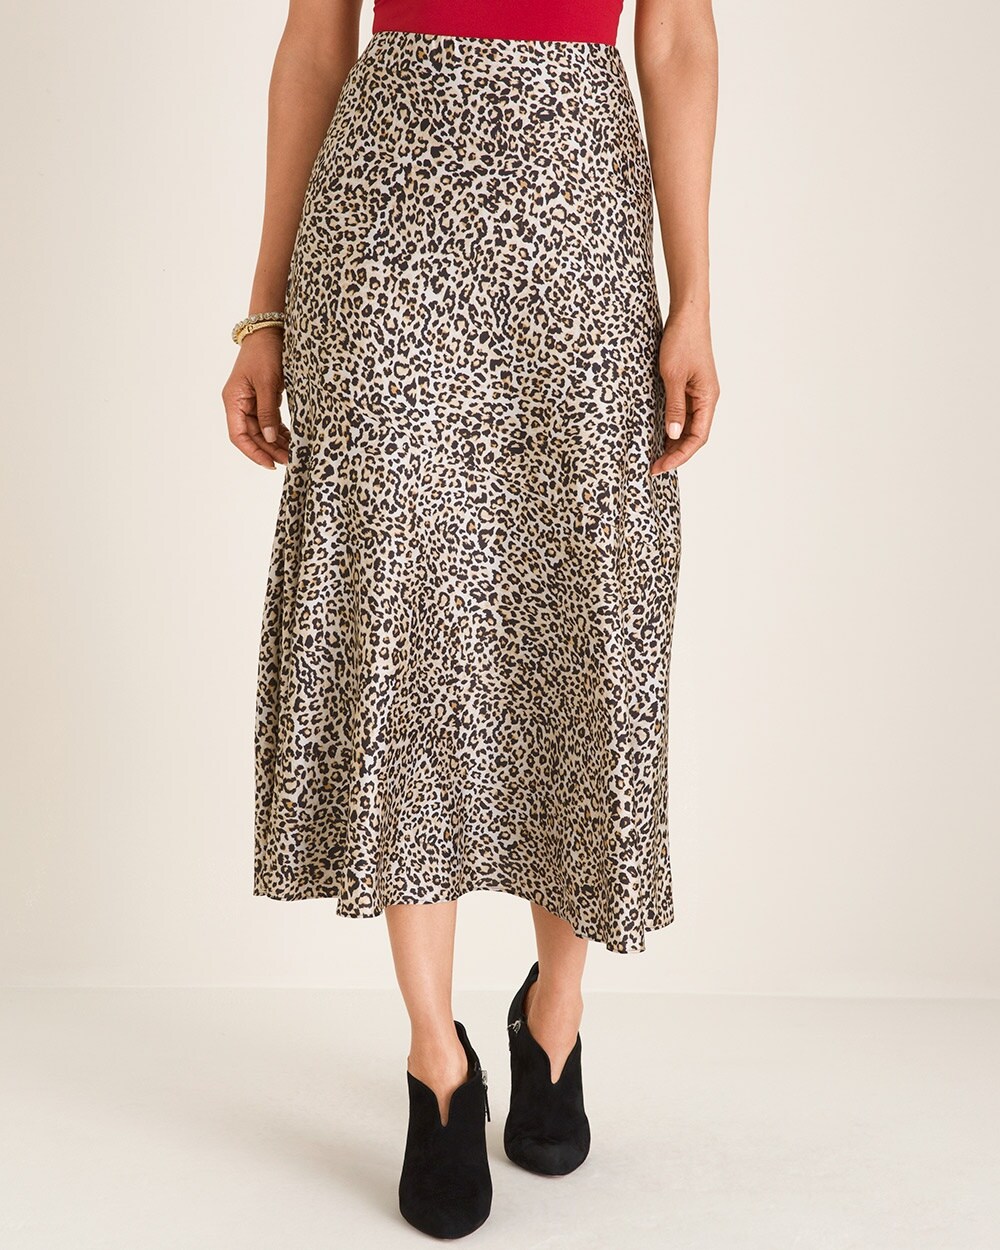 Leopard-Print Maxi Skirt